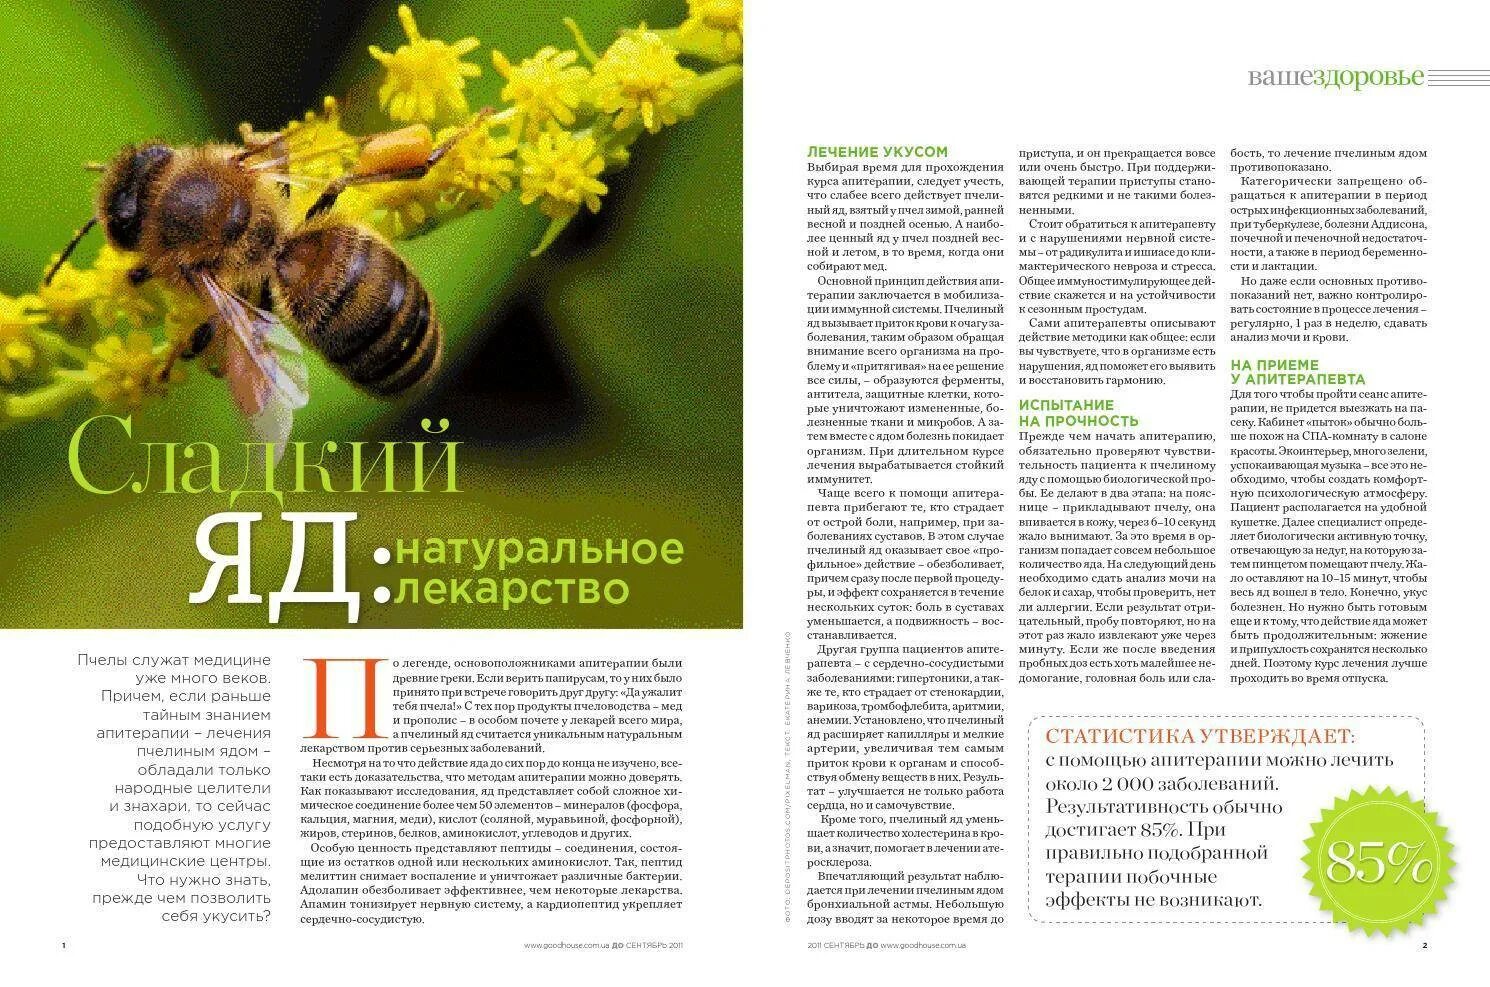 Пчелиный яд апитерапия. Терапия пчелиными укусами. Лечение пчелиным ядом